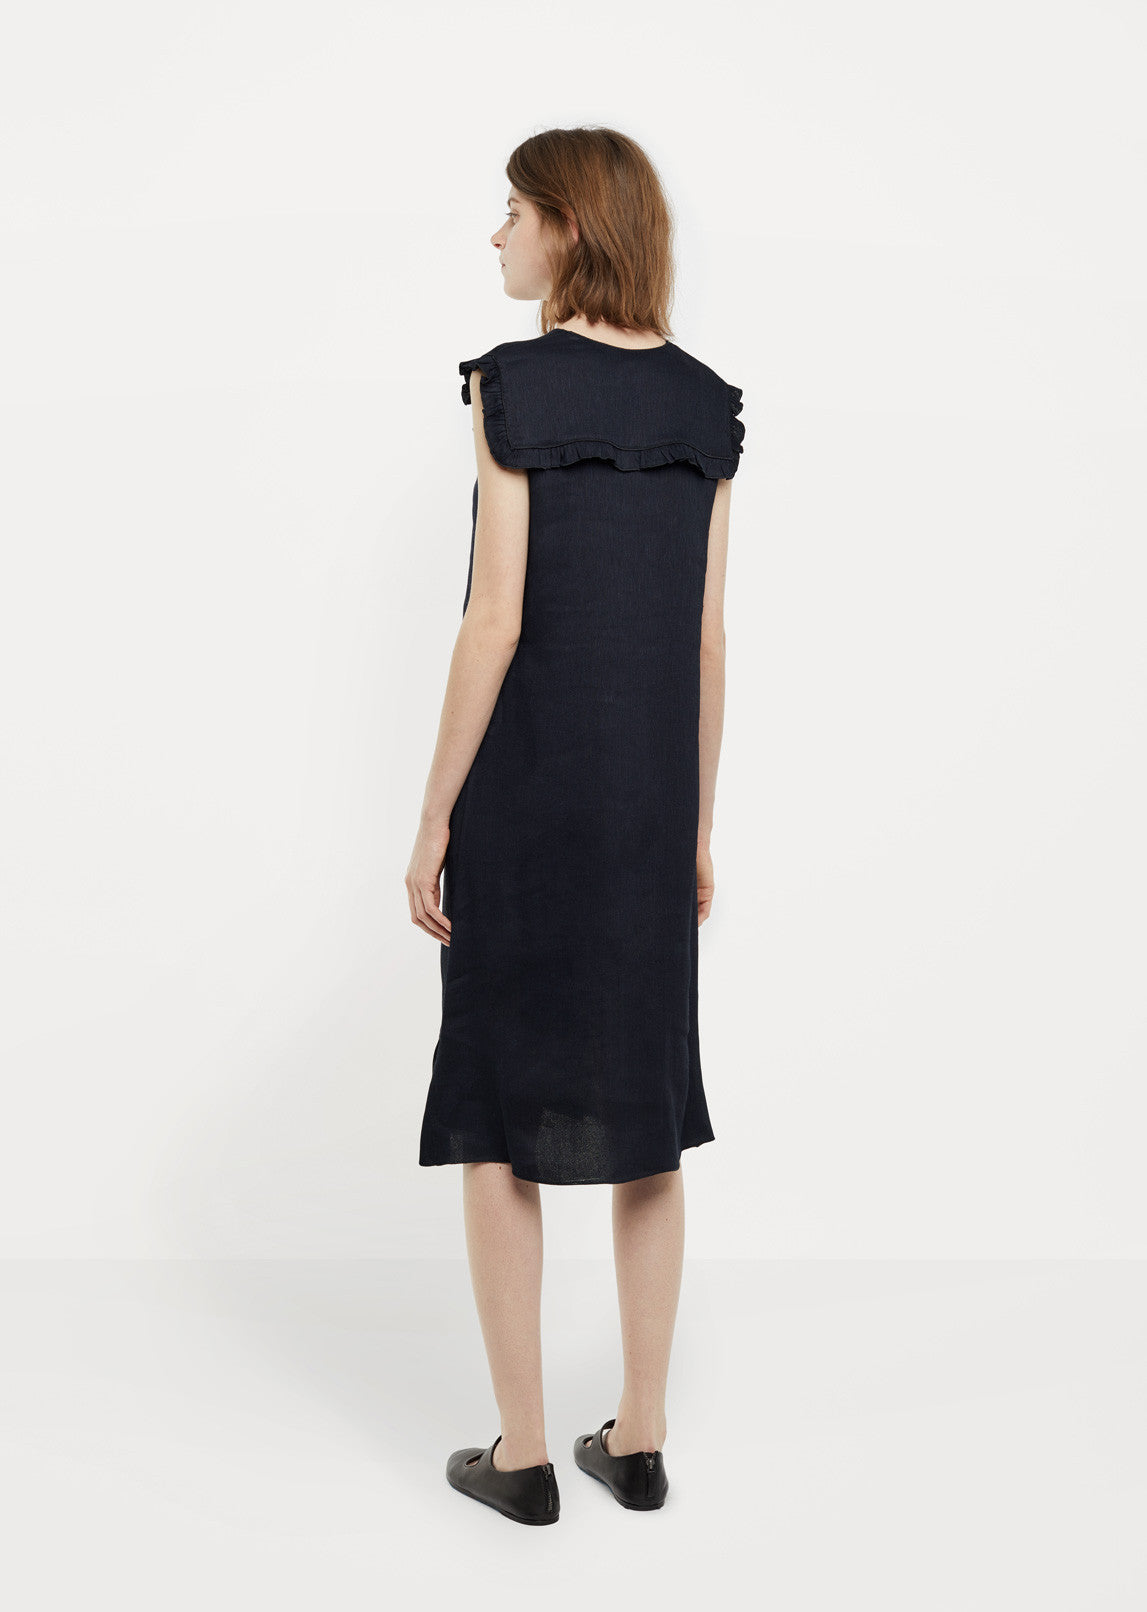 Viscose and Linen Ruffle Dress by Sara Lanzi - La Garçonne